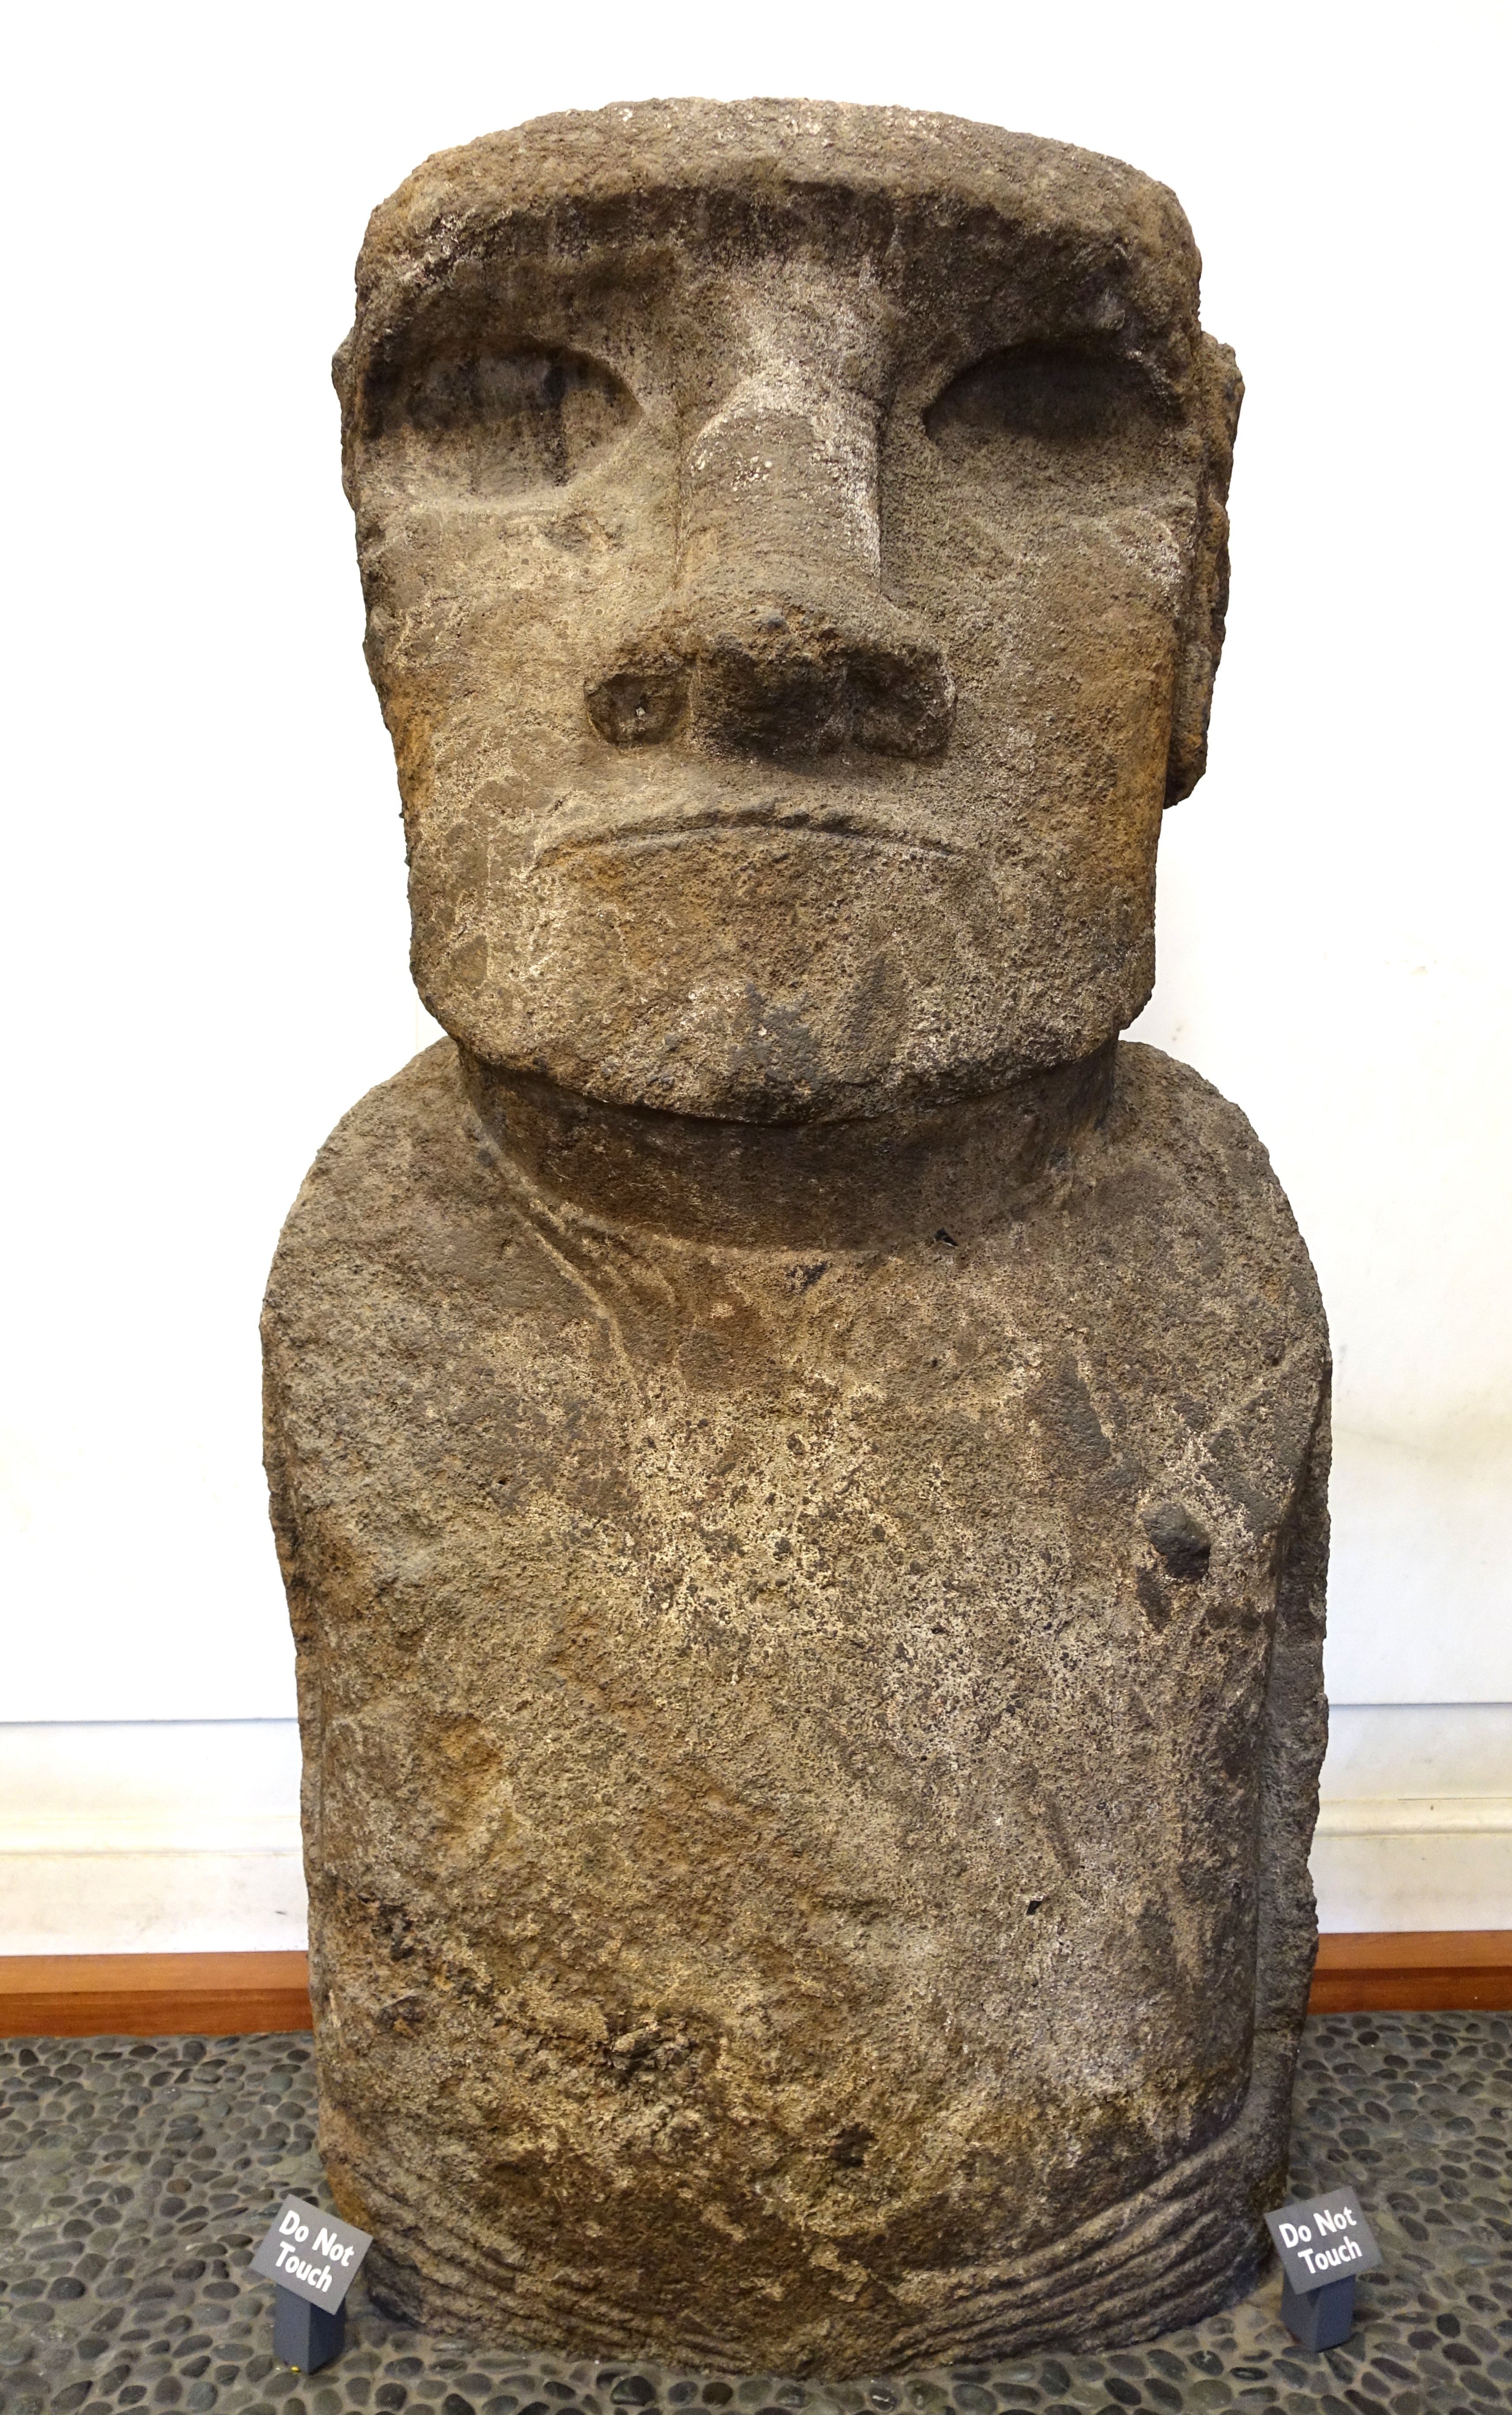 File:Moai (Easter Island stone figure), Rapa Nui, Easter Island ...